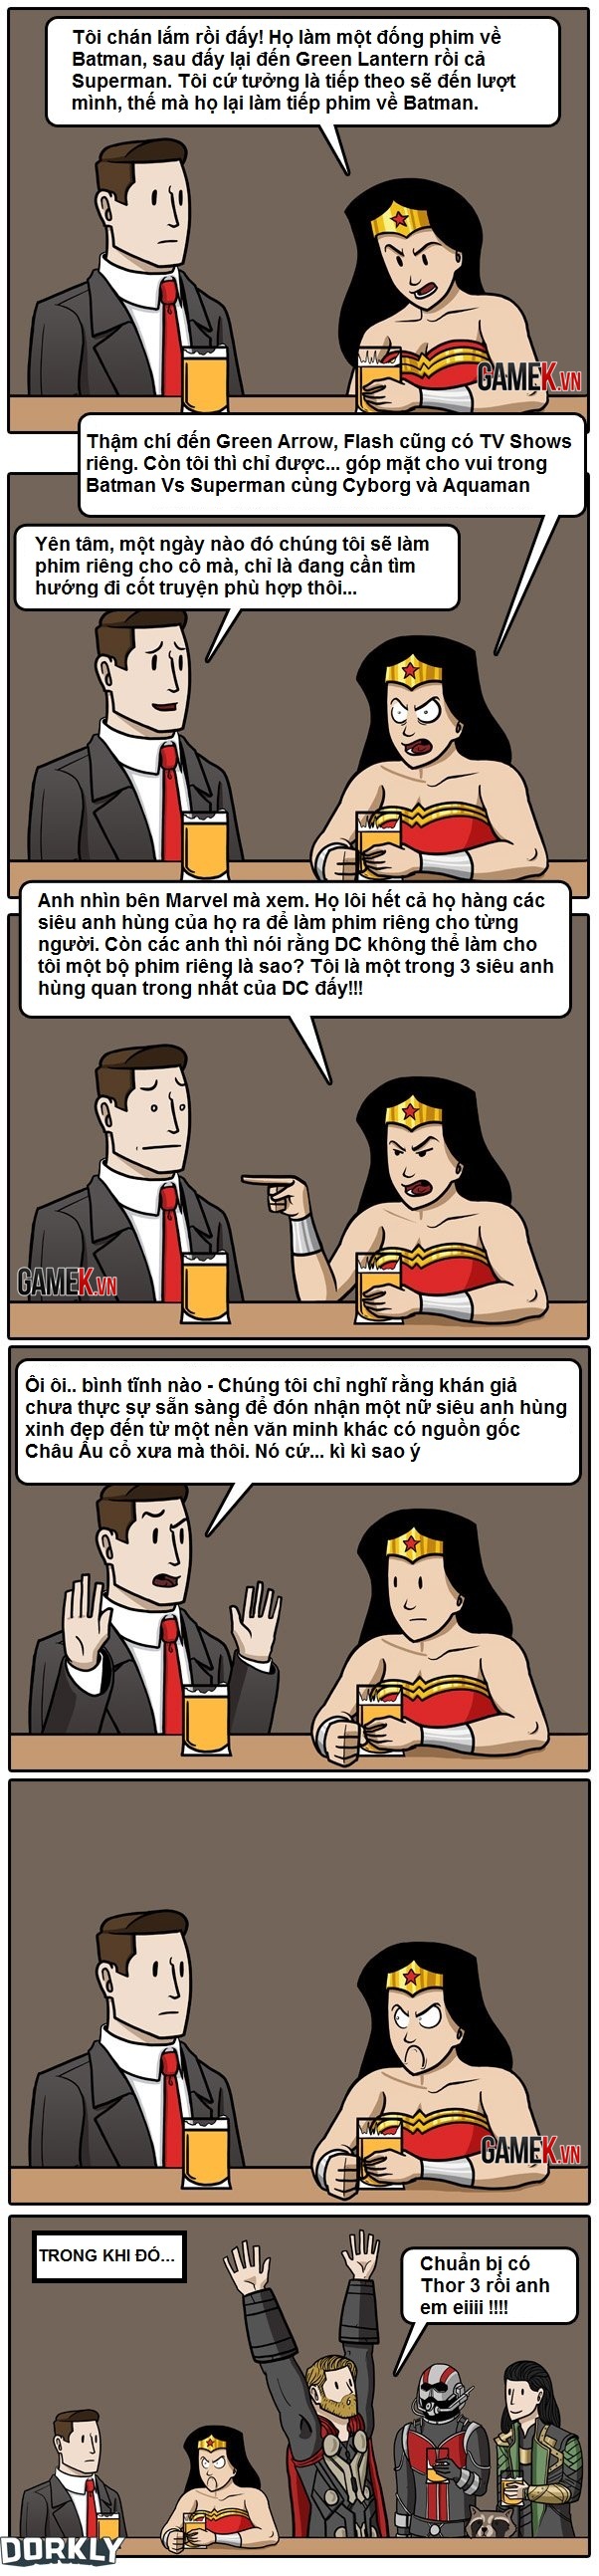 Truyện tranh hài - Nỗi khổ tâm của Wonder Woman